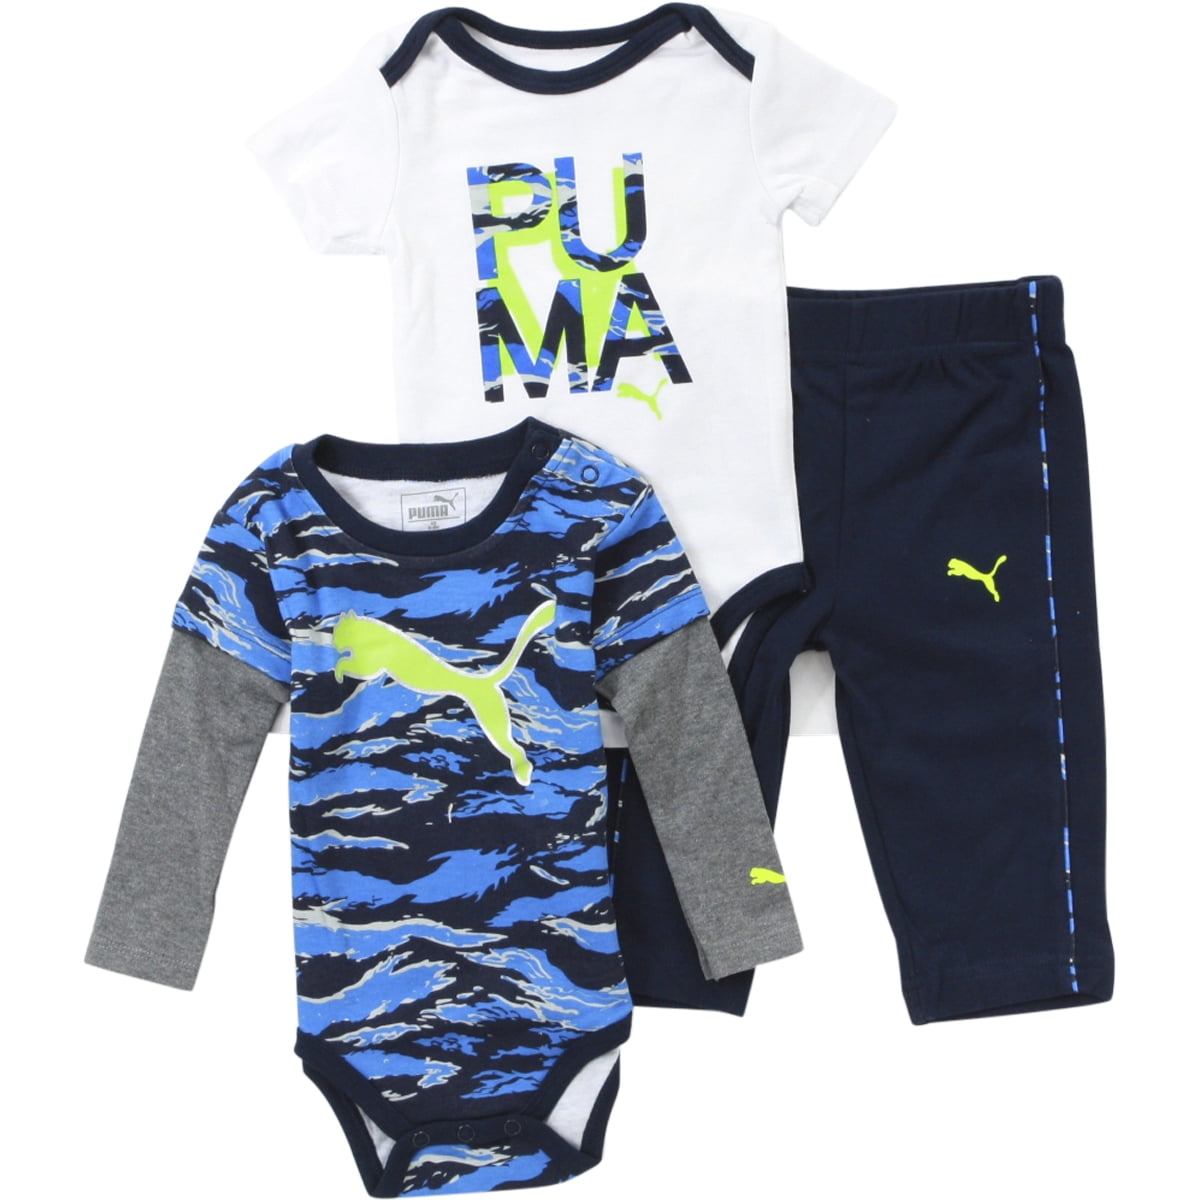 puma baby clothes